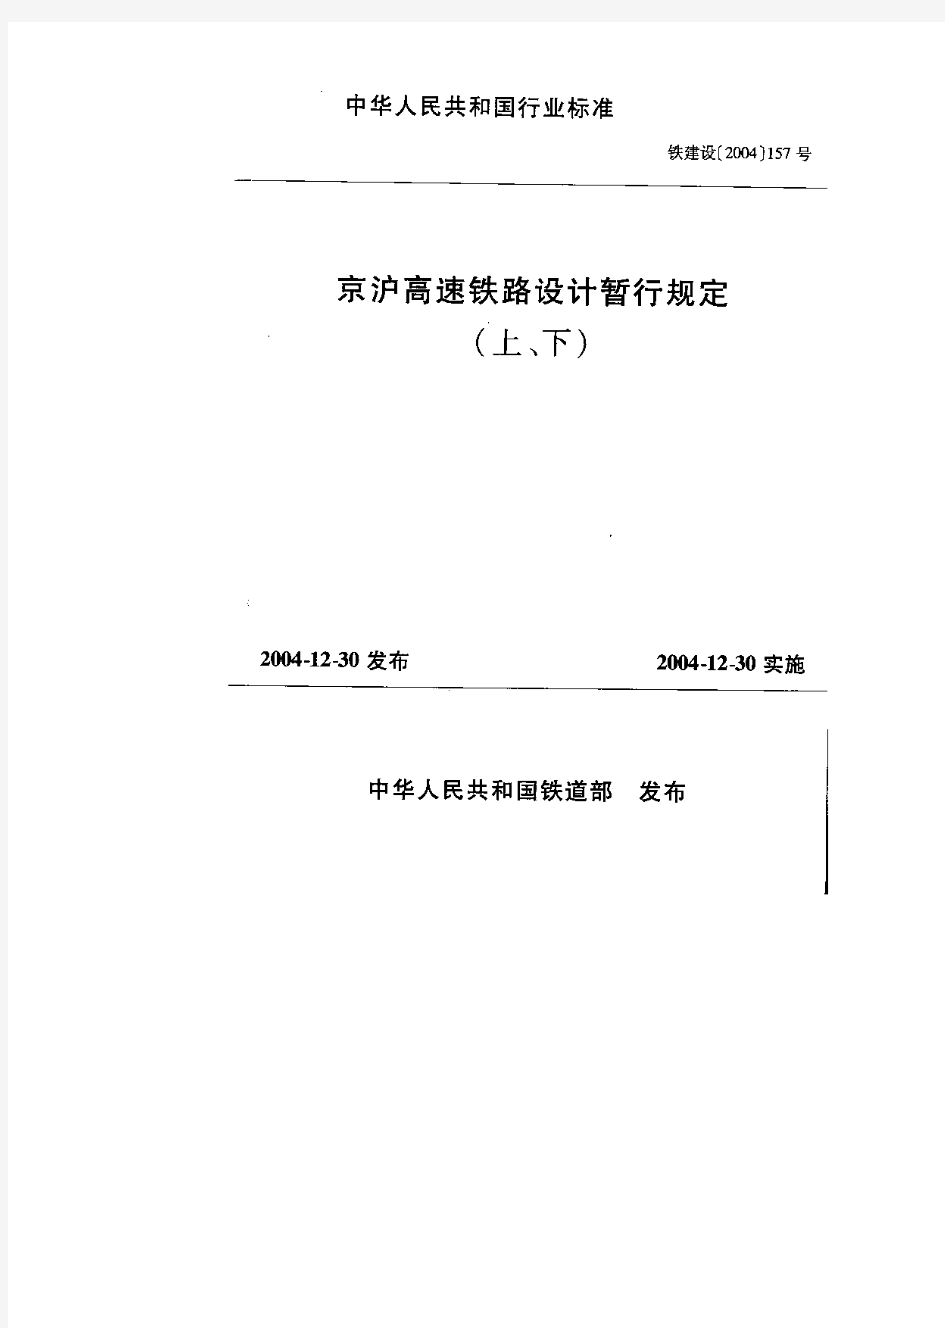 铁建设[2004]157号-京沪高速铁路设计暂行规定(通信信号部分)